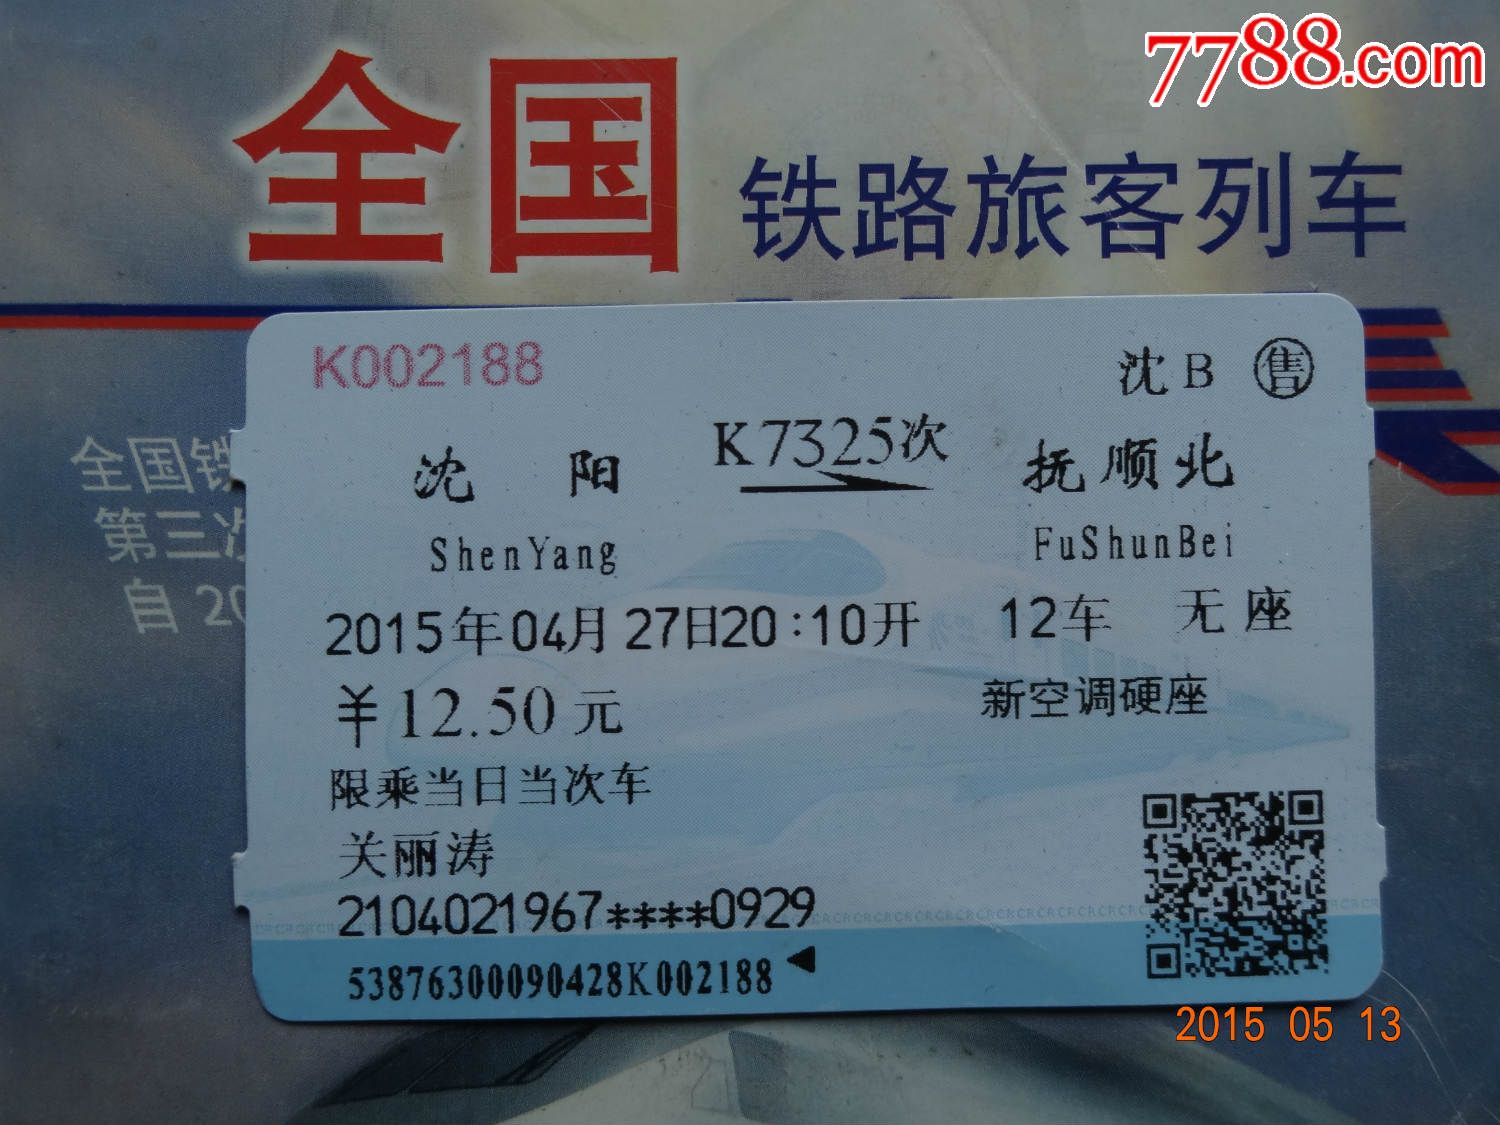 K7325次沈阳--抚顺北火车票一张